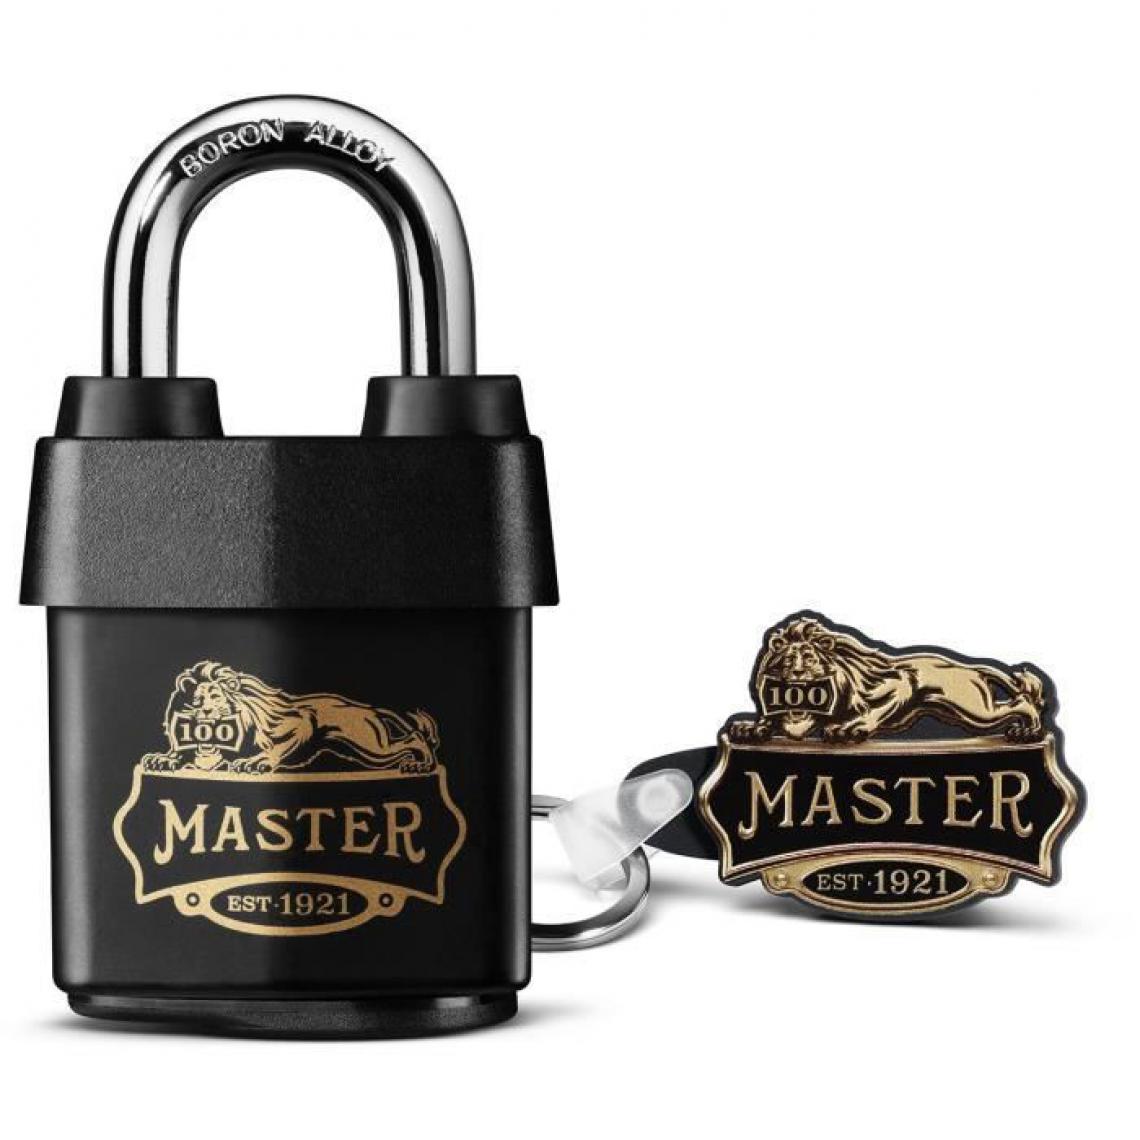 Master Lock - Master Lock 1921EURDCC Cadenas Haute Sécurité Etanche avec le Logo des 100 ans, Noir, 97 x 54 x 32 mm - Verrou, cadenas, targette